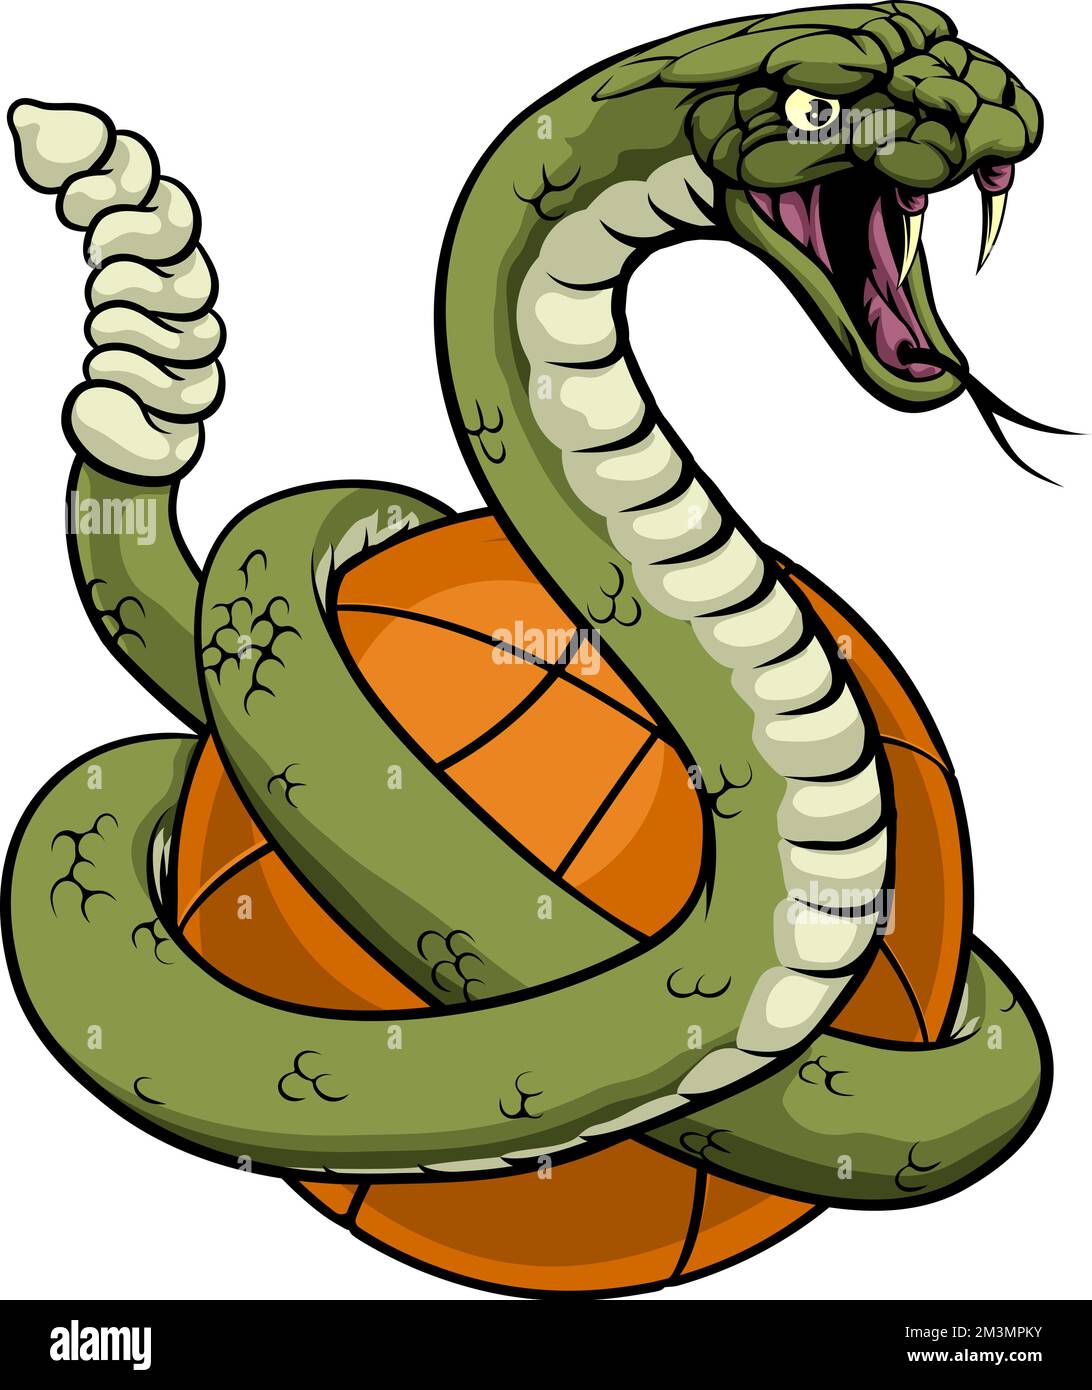 Rattlesnake Basketball Animal Sports Team Mascot Stock Vector